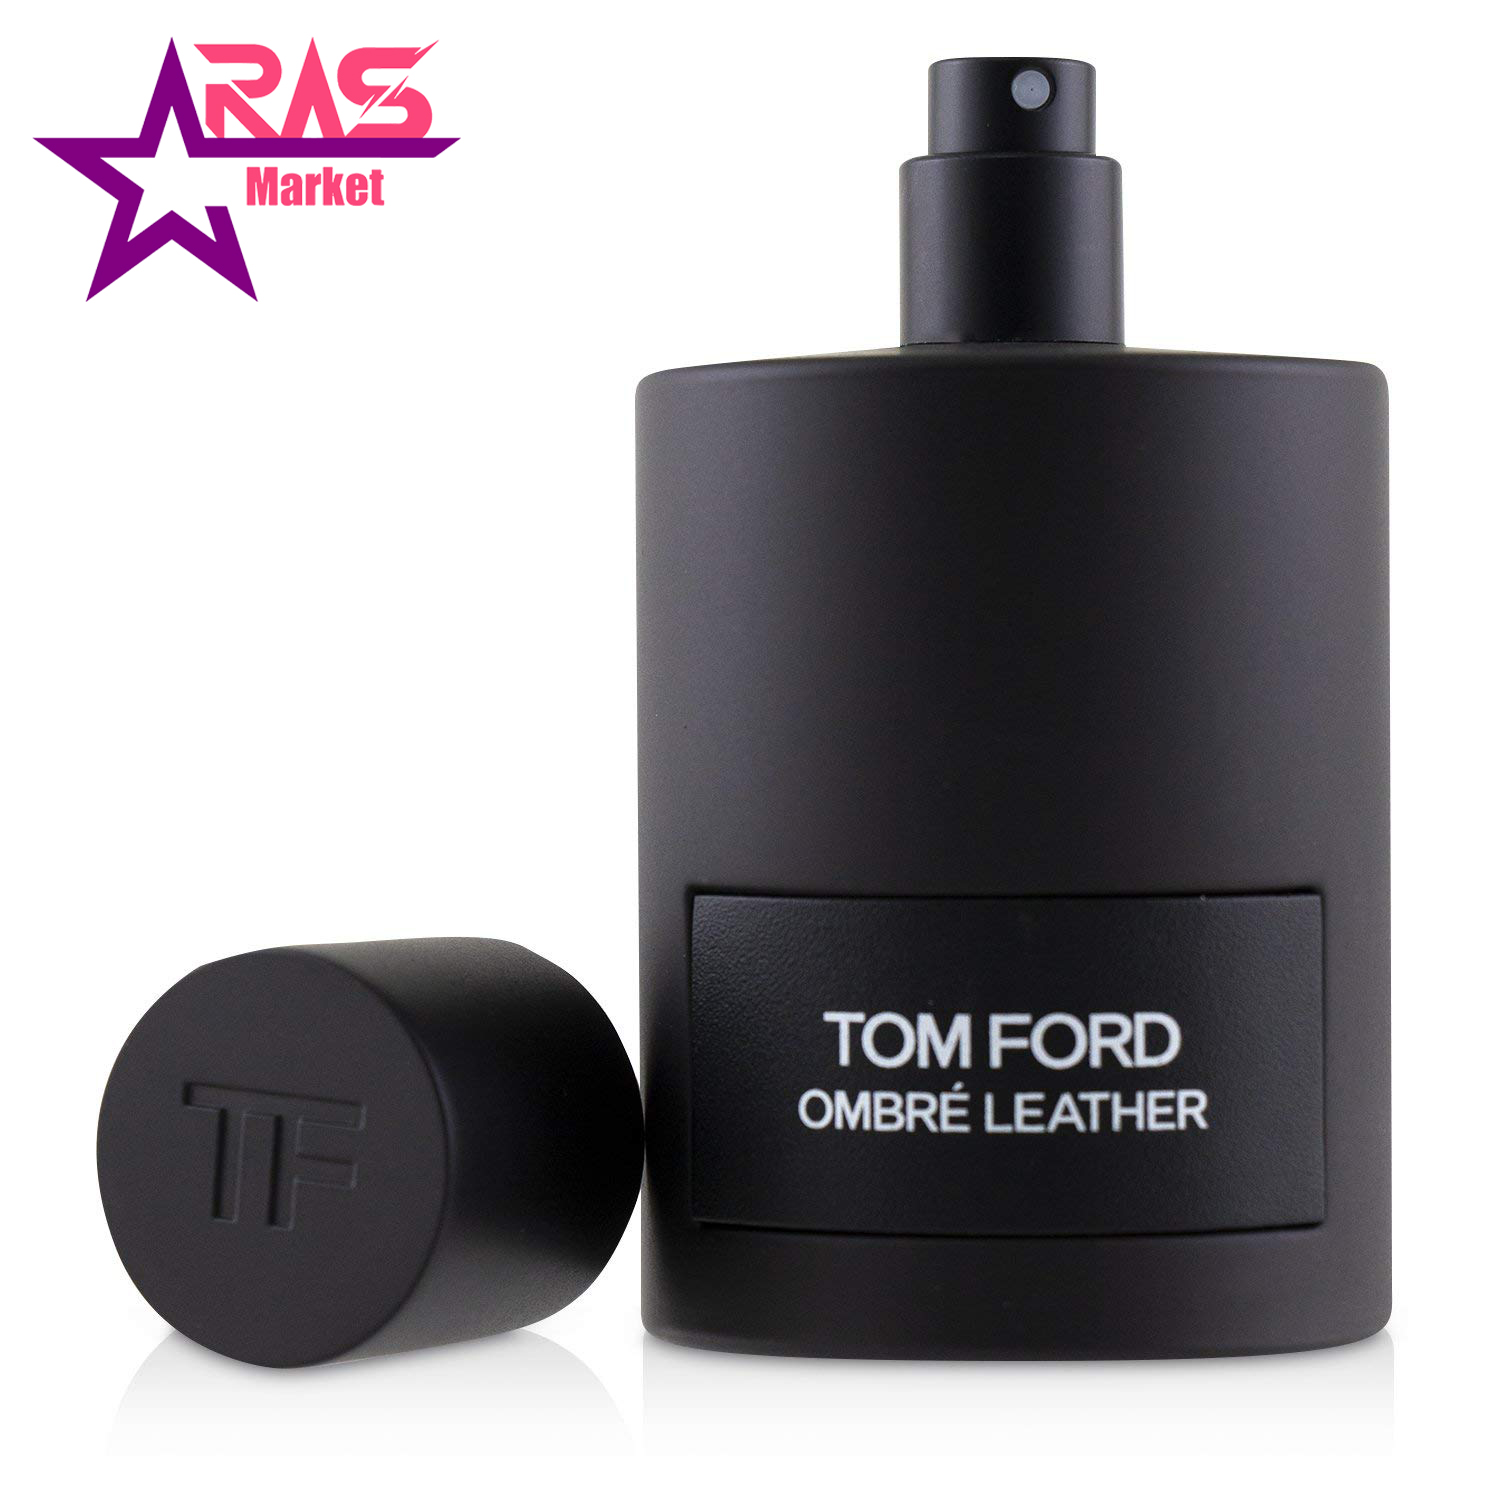 عطر تام فورد Tom Ford Ombré Leather مردانه 100 میلی لیتر ، فروشگاه اینترنتی ارس مارکت